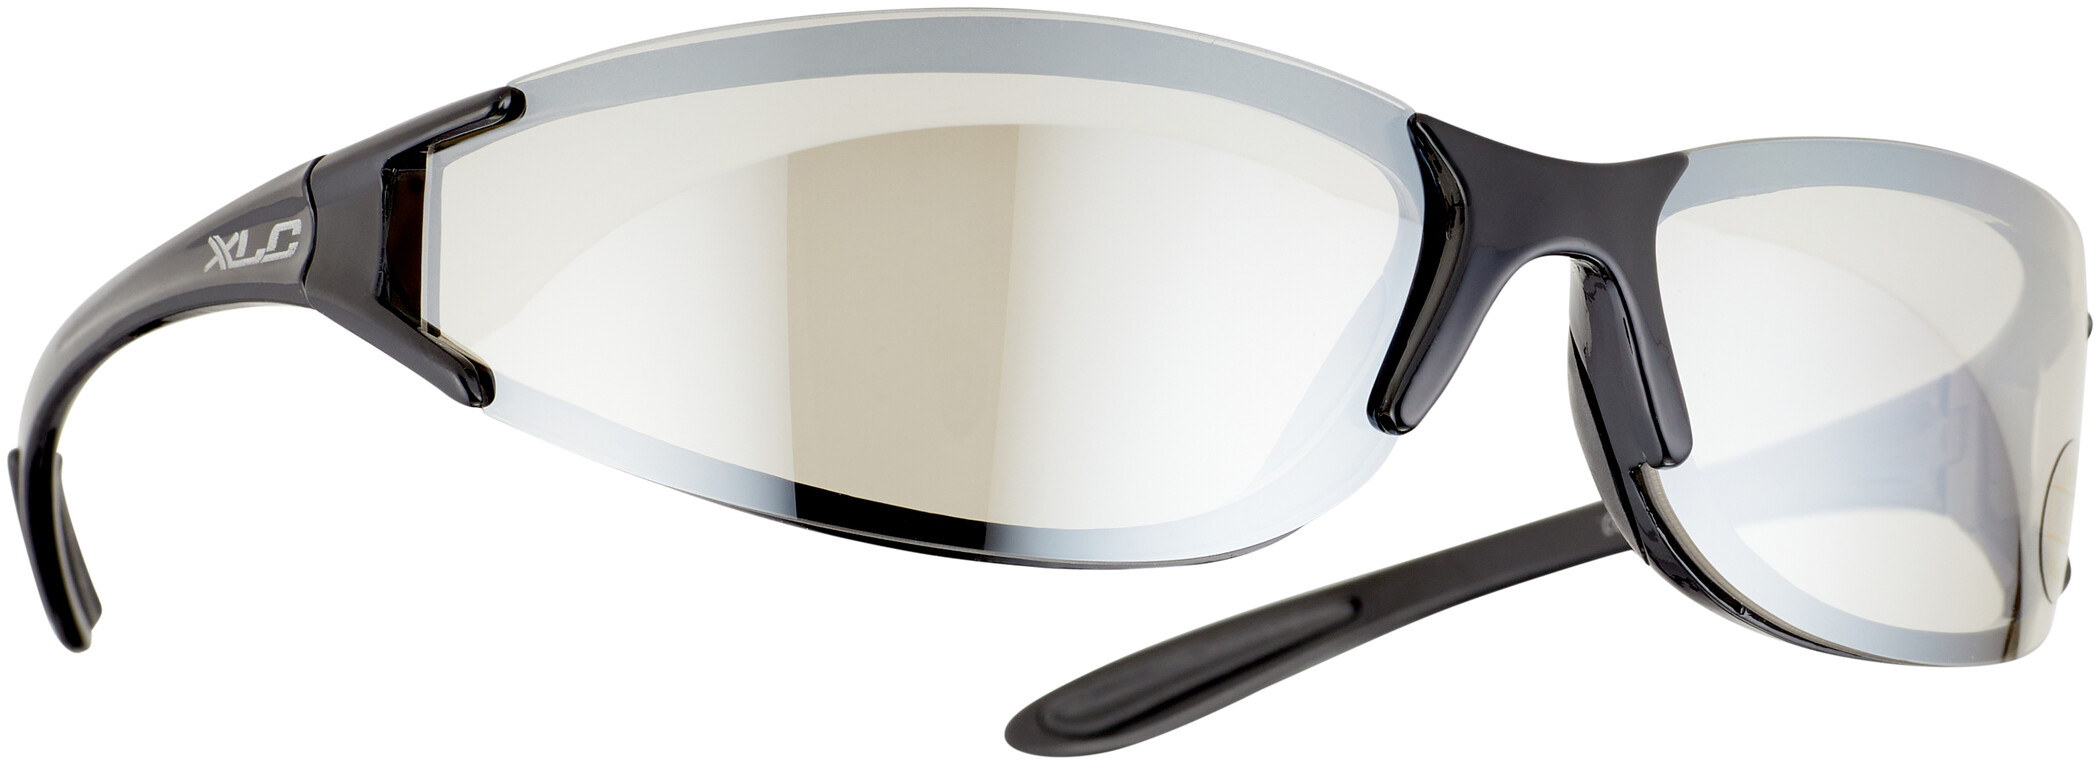 Gafas deportivas-leves gafas de protección-bicicleta gafas-ciclismo-según en 166 